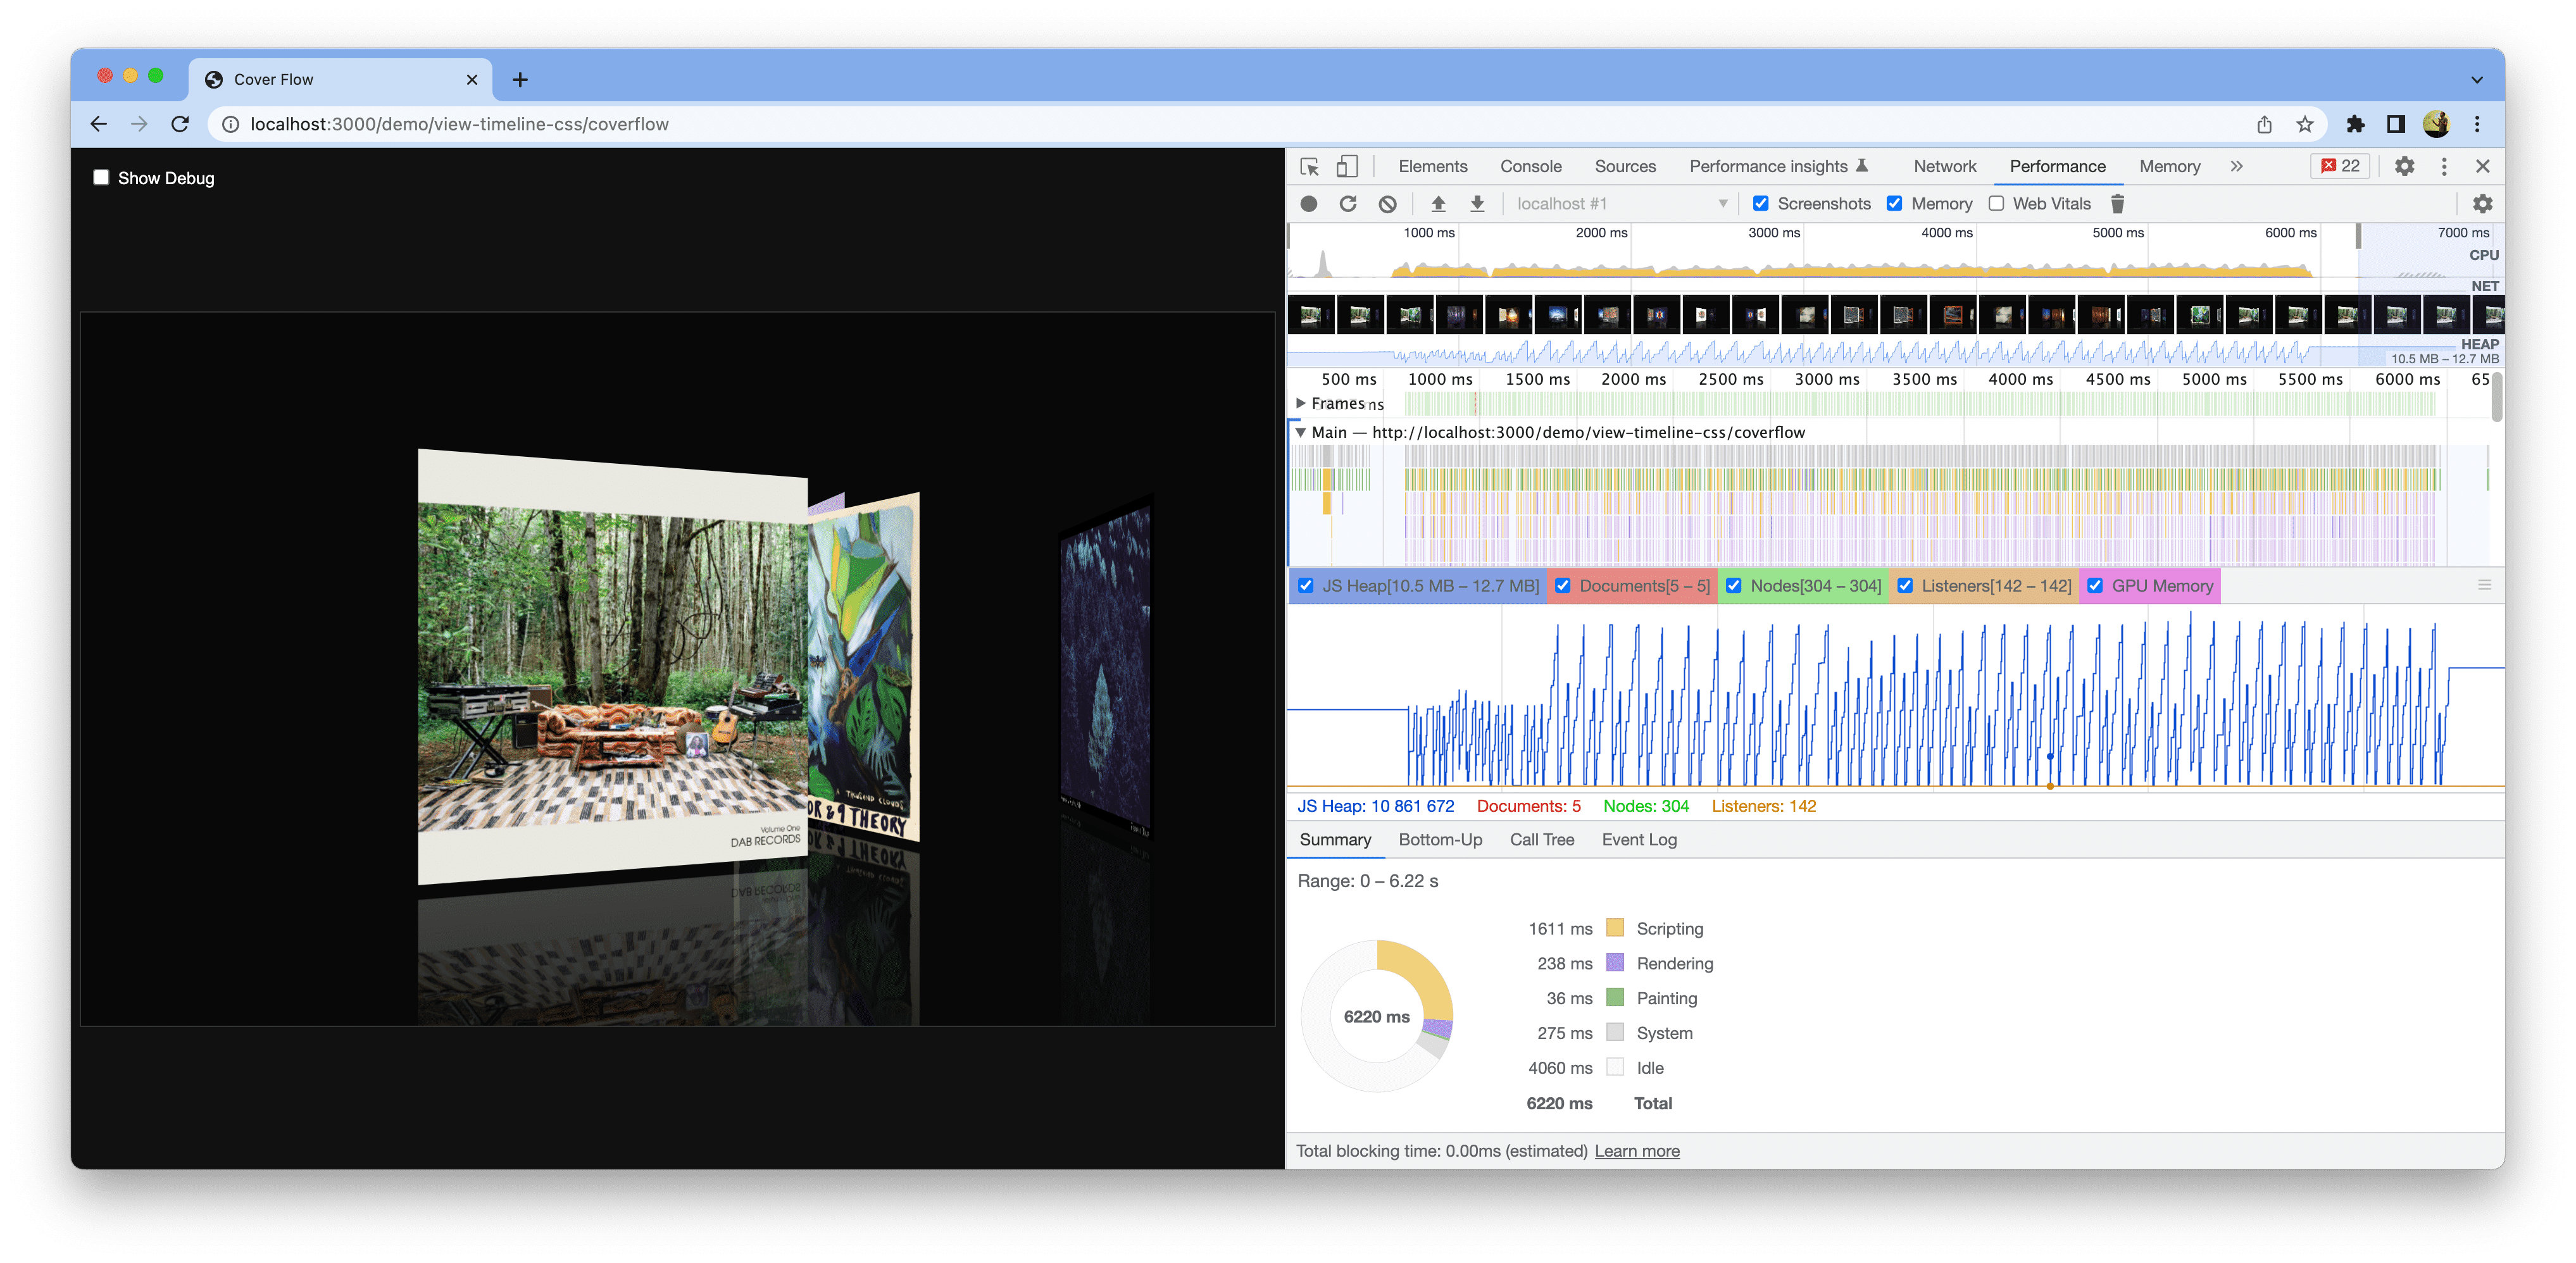 اسکرین شات از یک نسخه نمایشی باز در کروم. ابزارهای توسعه دهنده باز هستند و اندازه گیری عملکرد بهبود یافته را نشان می دهند.